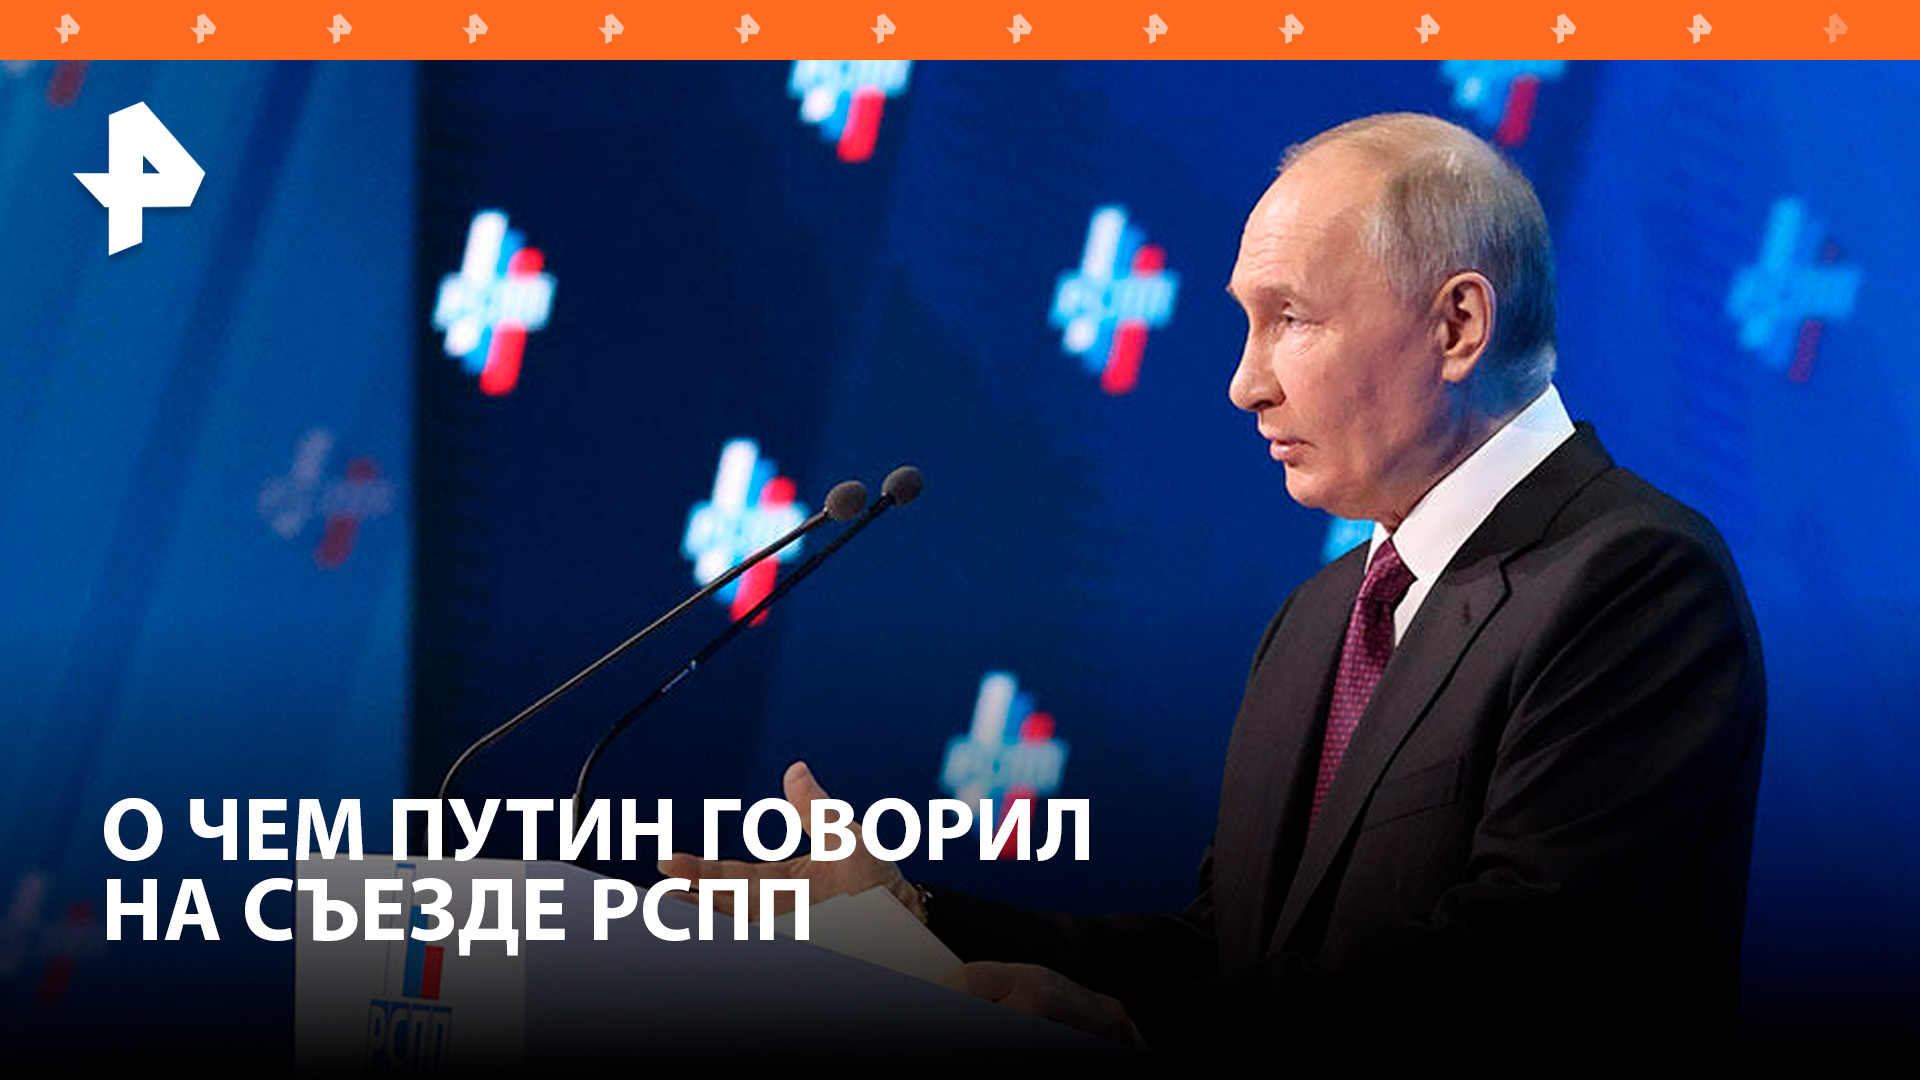 Рост экономики и перспективы бизнеса: о чем Путин говорил на съезде РСПП / РЕН Новости